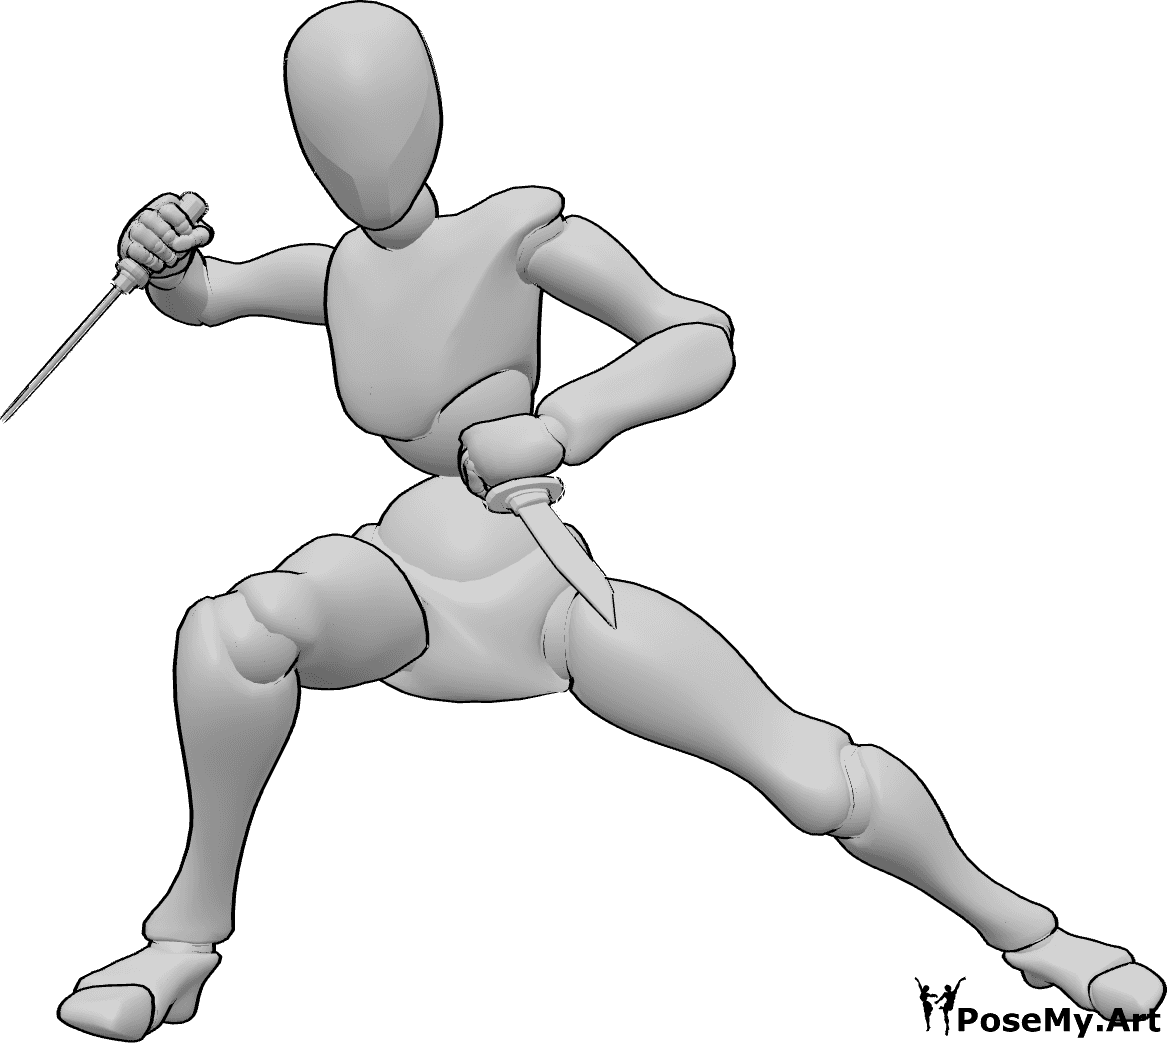 Posen-Referenz- Dolch Kampfhaltung Pose - Frau hält zwei Dolche und ist bereit zu kämpfen, Messer Kampfhaltung Pose